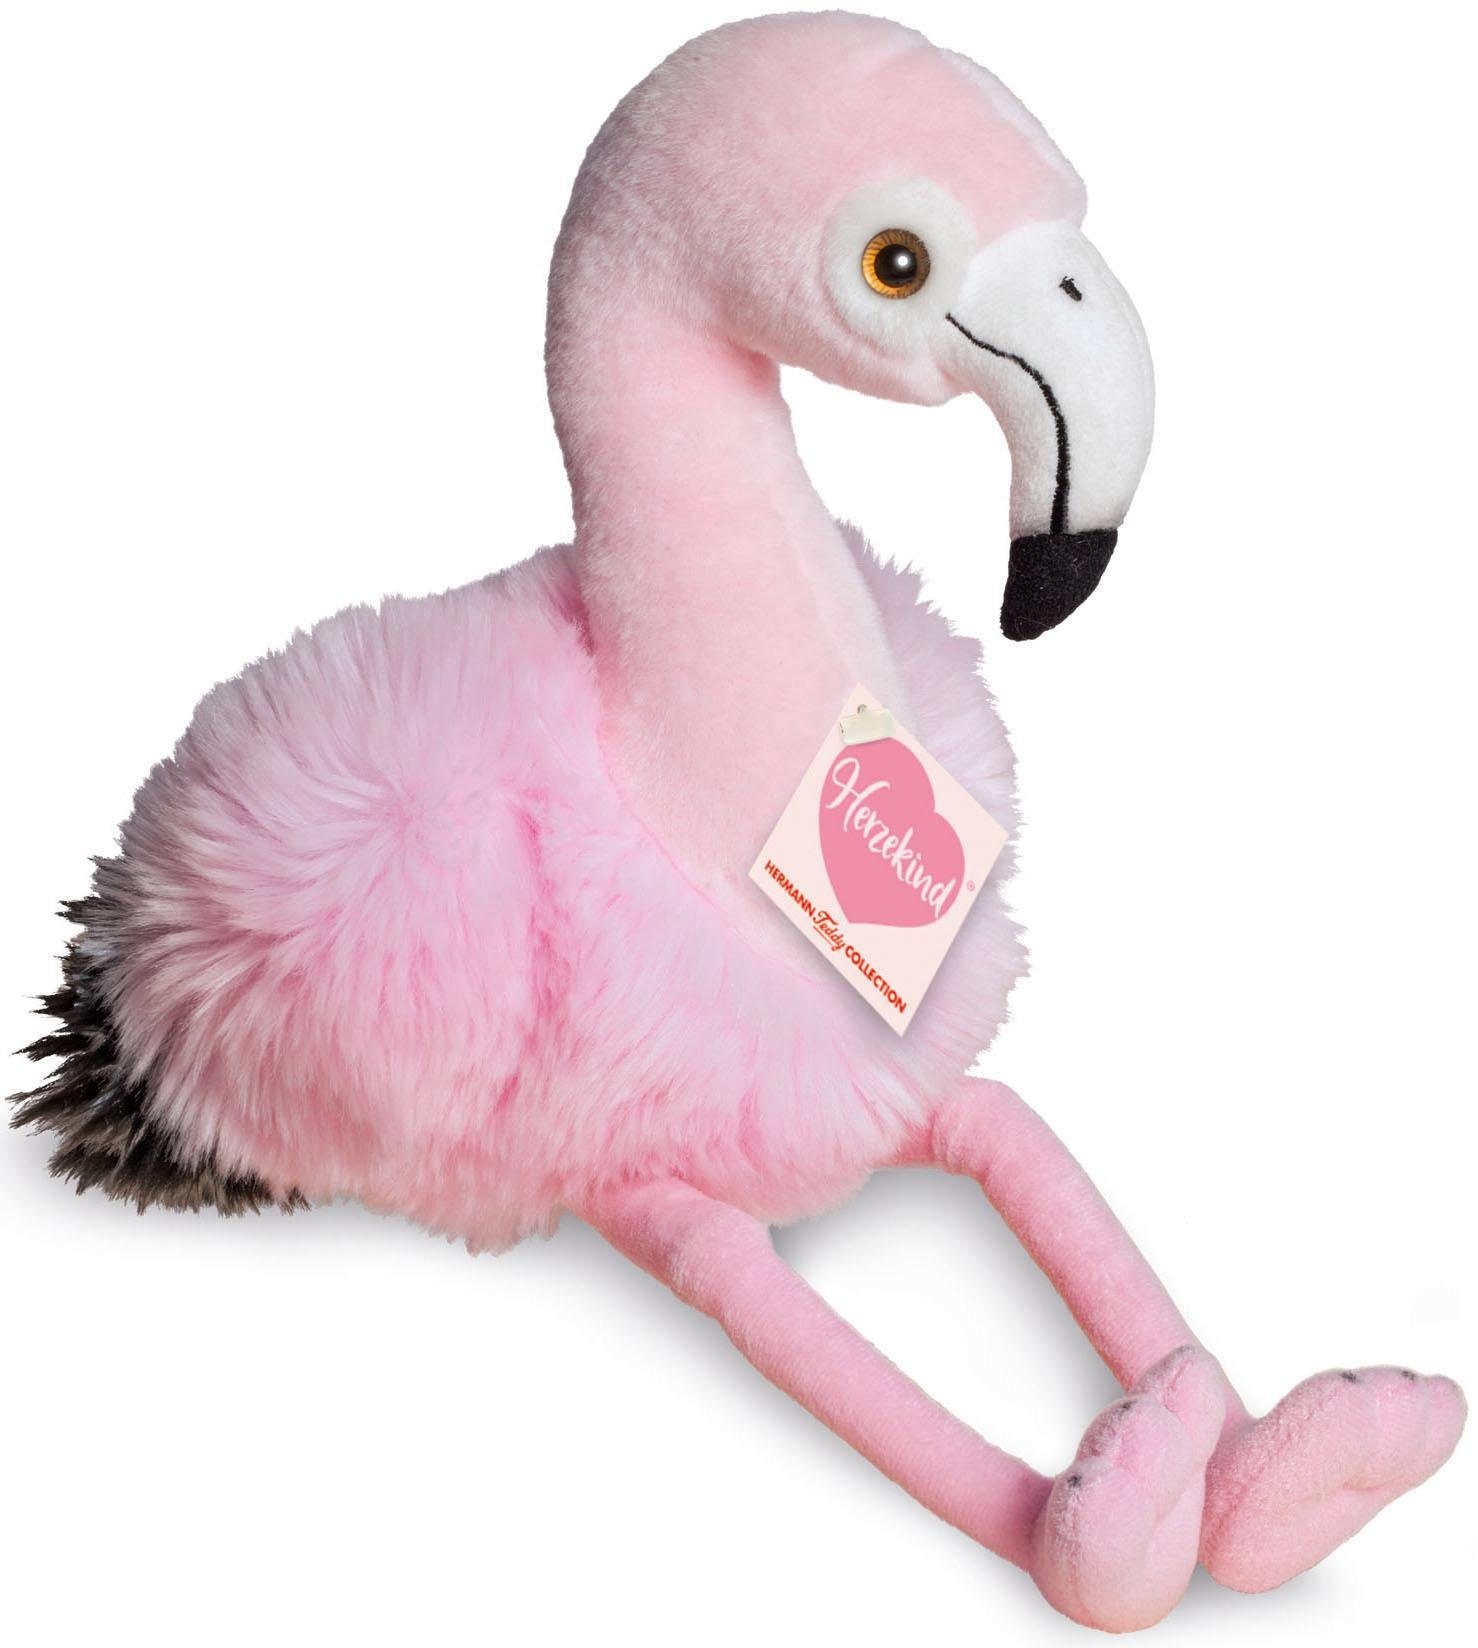 ca 17-100 cm sitzend NEU!!! Flamingo Stofftier  von Sunkid mit Etikett 